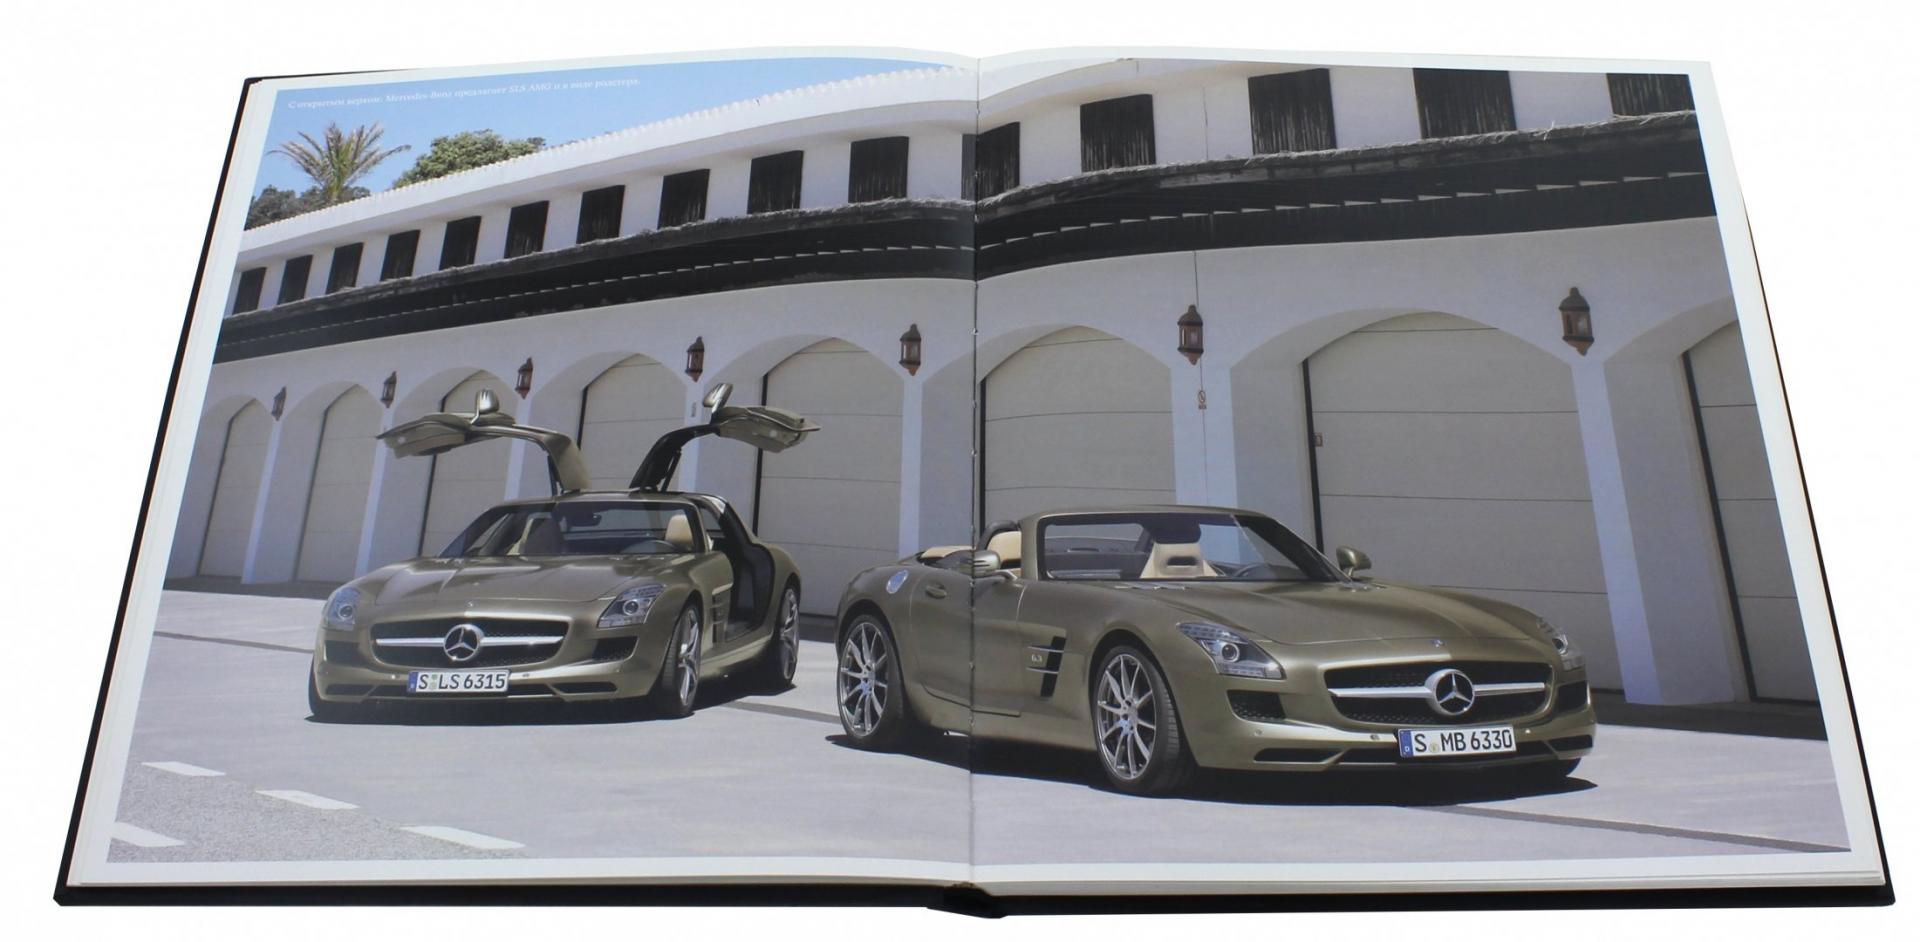 Иллюстрация 1 из 6 для Mersedes-Benz. Автомобиль мечты - Кристоф Фивег | Лабиринт - книги. Источник: Лабиринт